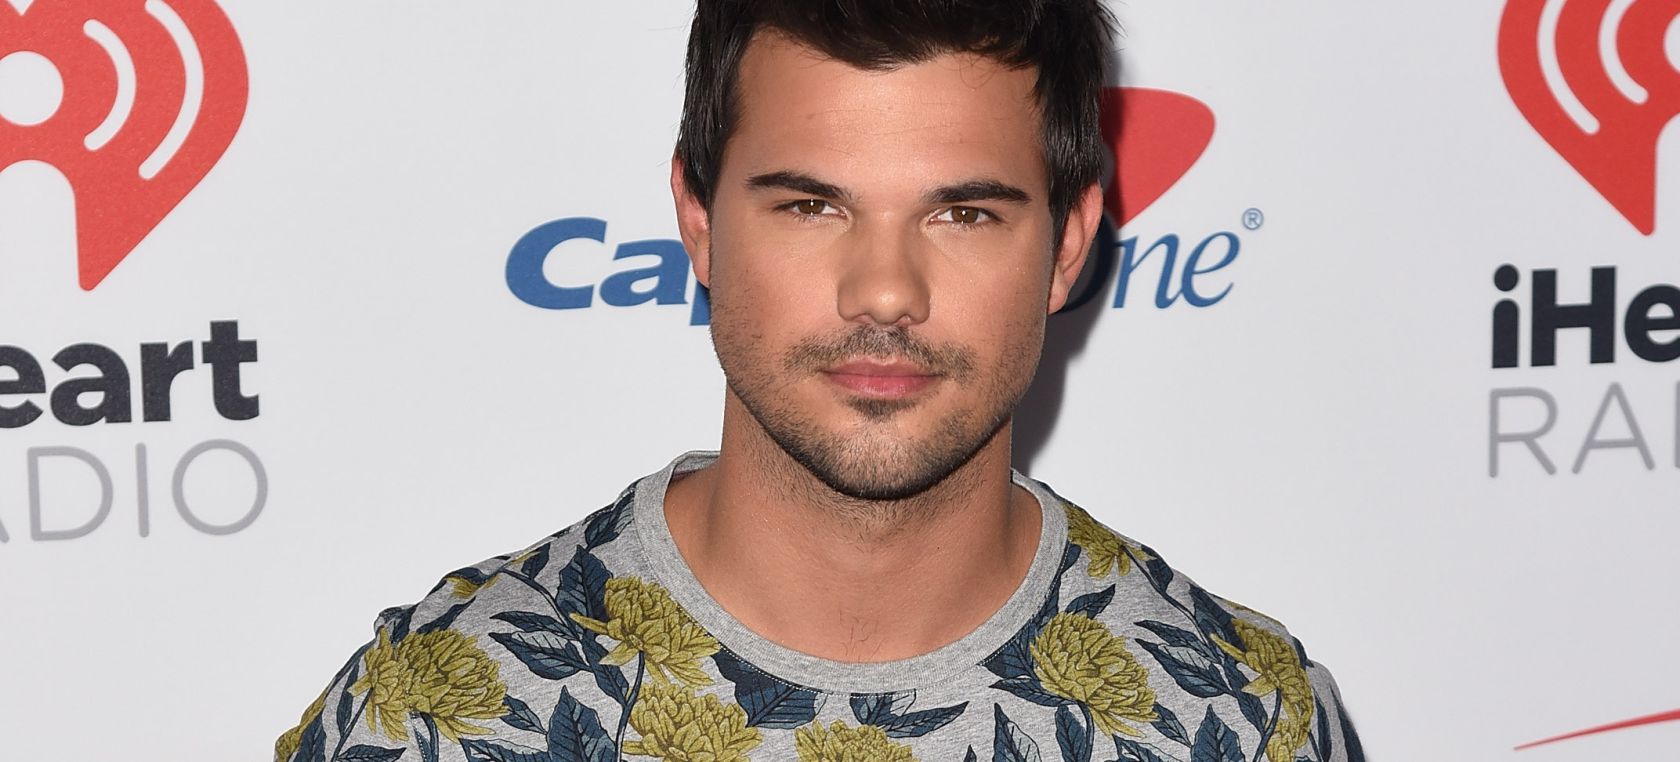 Taylor Lautner vuelve a lucir abdominales tras ‘Crepúsculo’